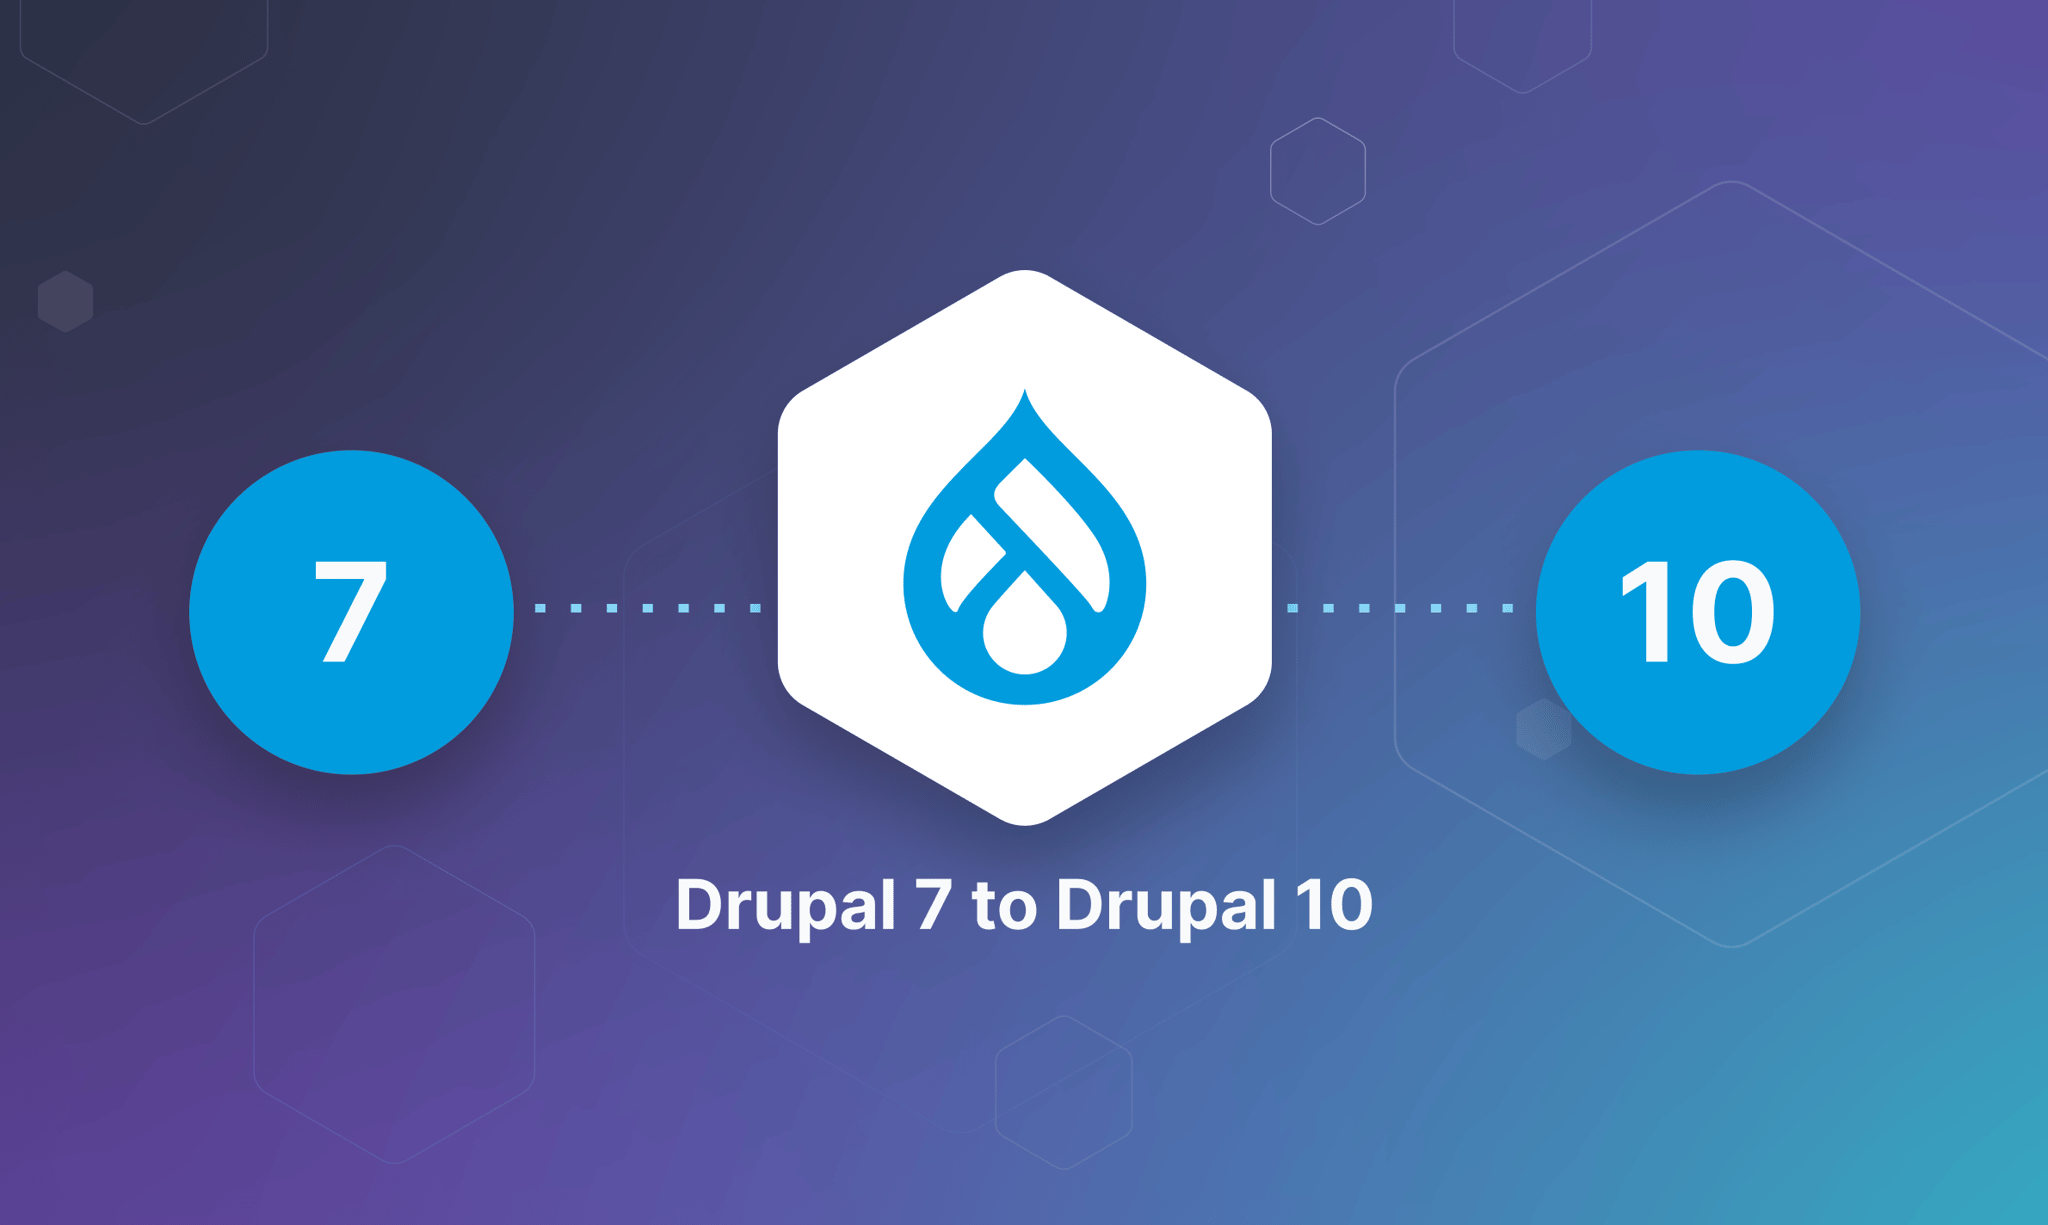 Drupal 7 to Drupal 10